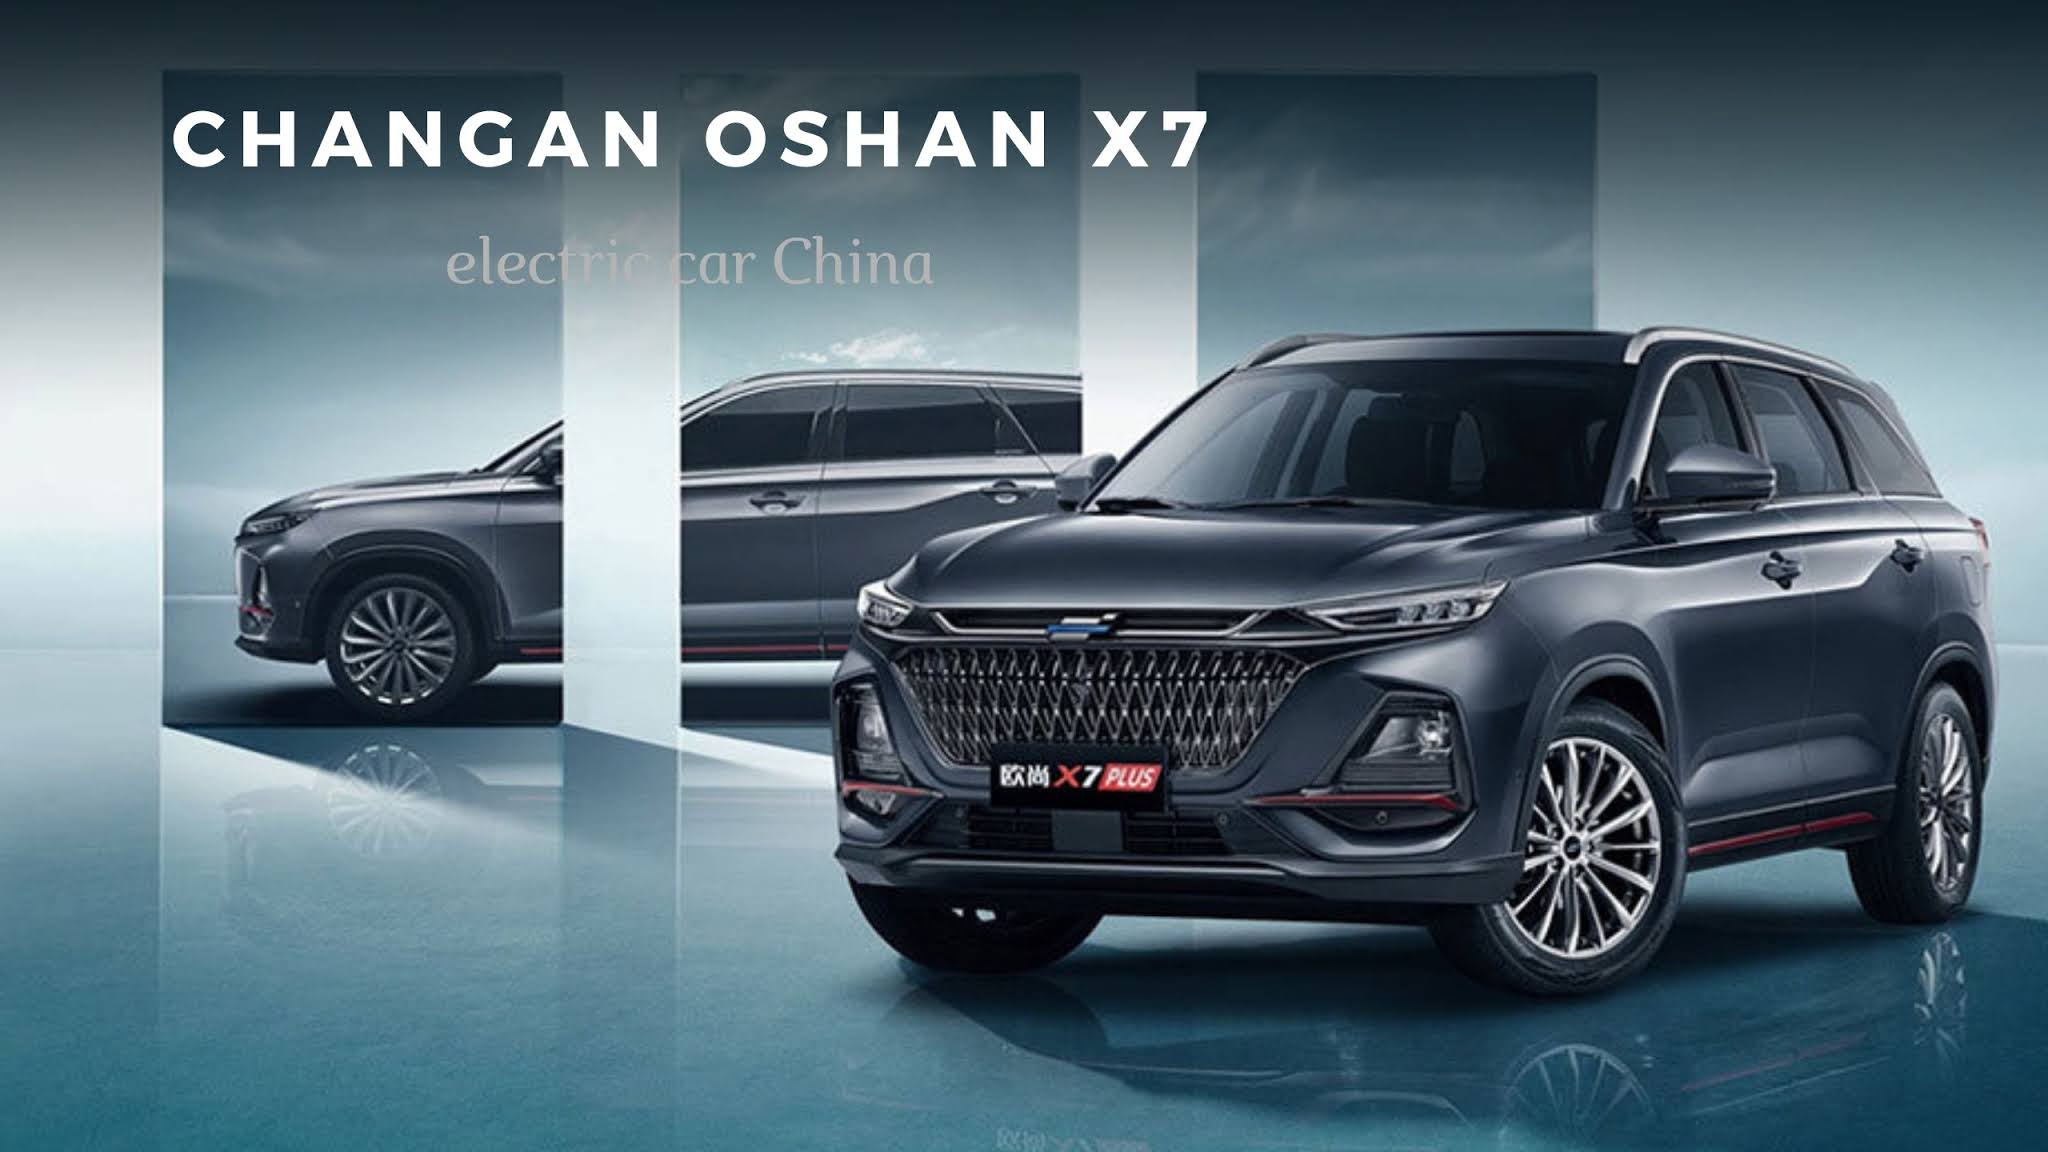 Changan Oshan X7 launch